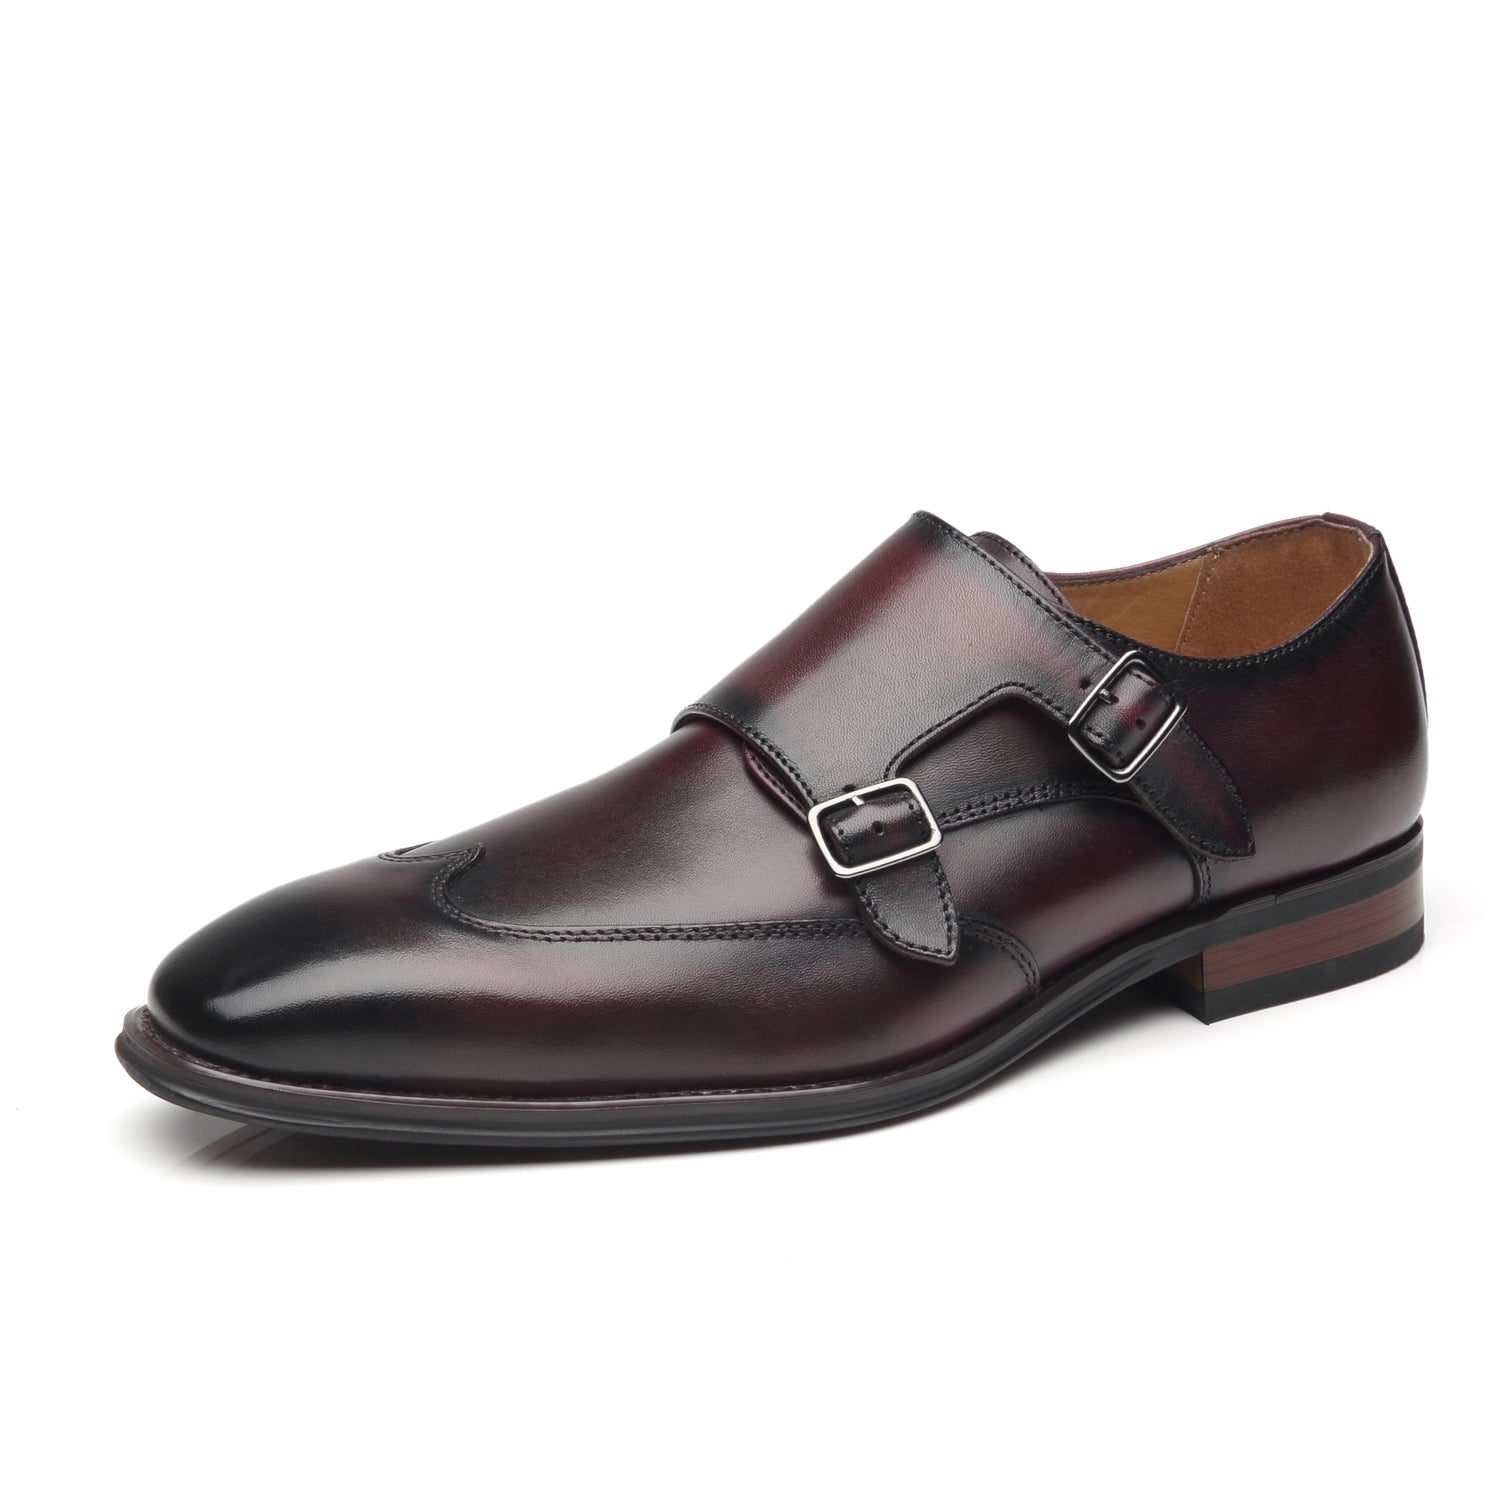 Baldinini Double Monk Strap Shoes, $455, farfetch.com